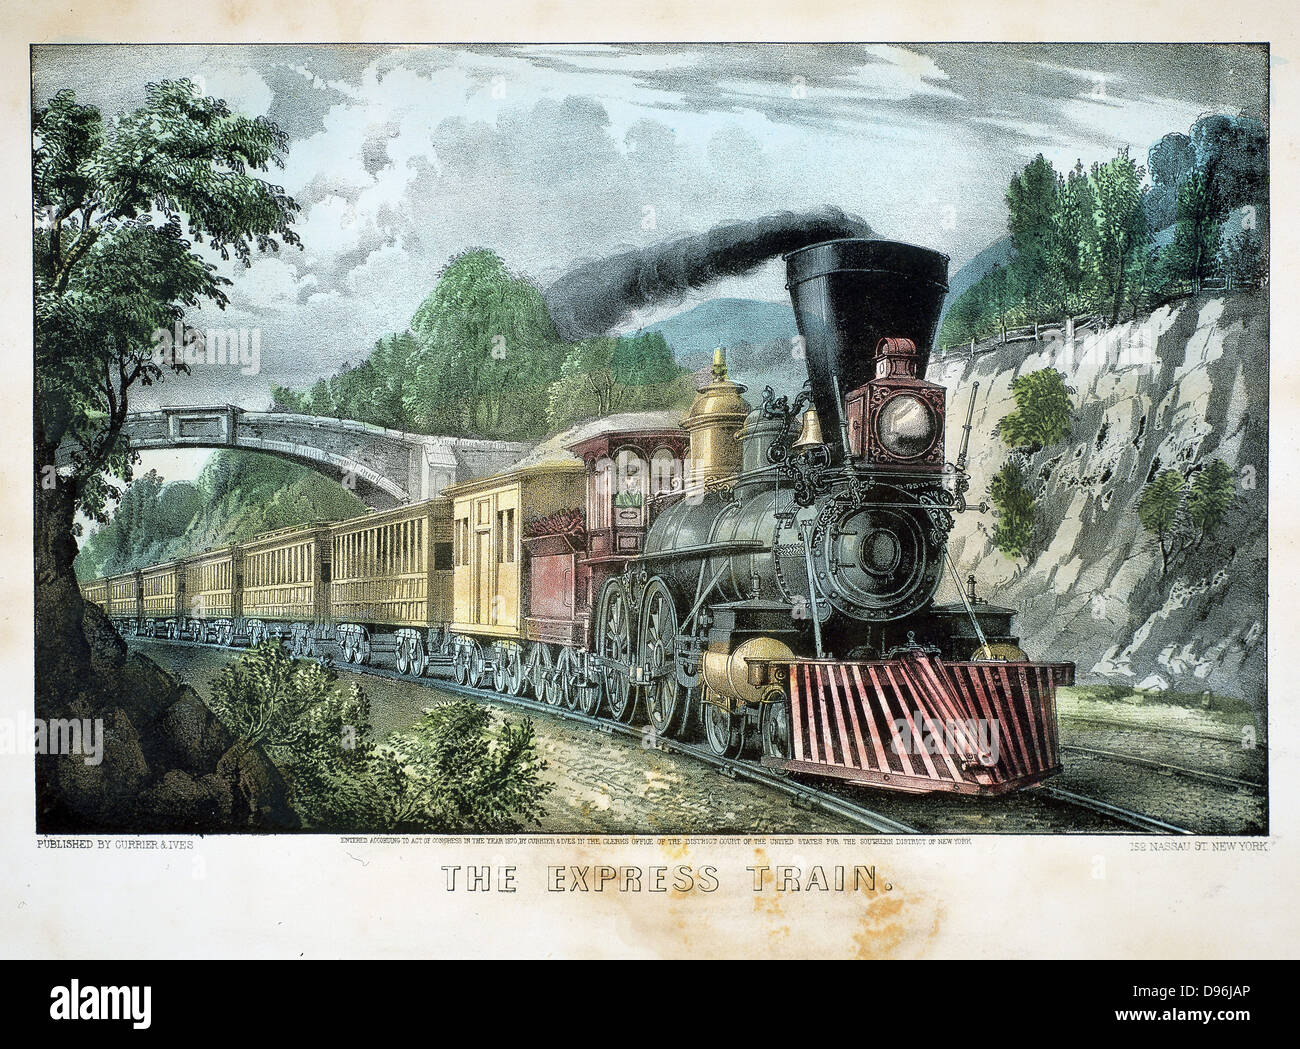 Il Treno Express. Locomotiva con cale cowcatcher treno attraverso il taglio. Stampa pubblicato da Currier & Ives, New York 1870. Litografia. Foto Stock